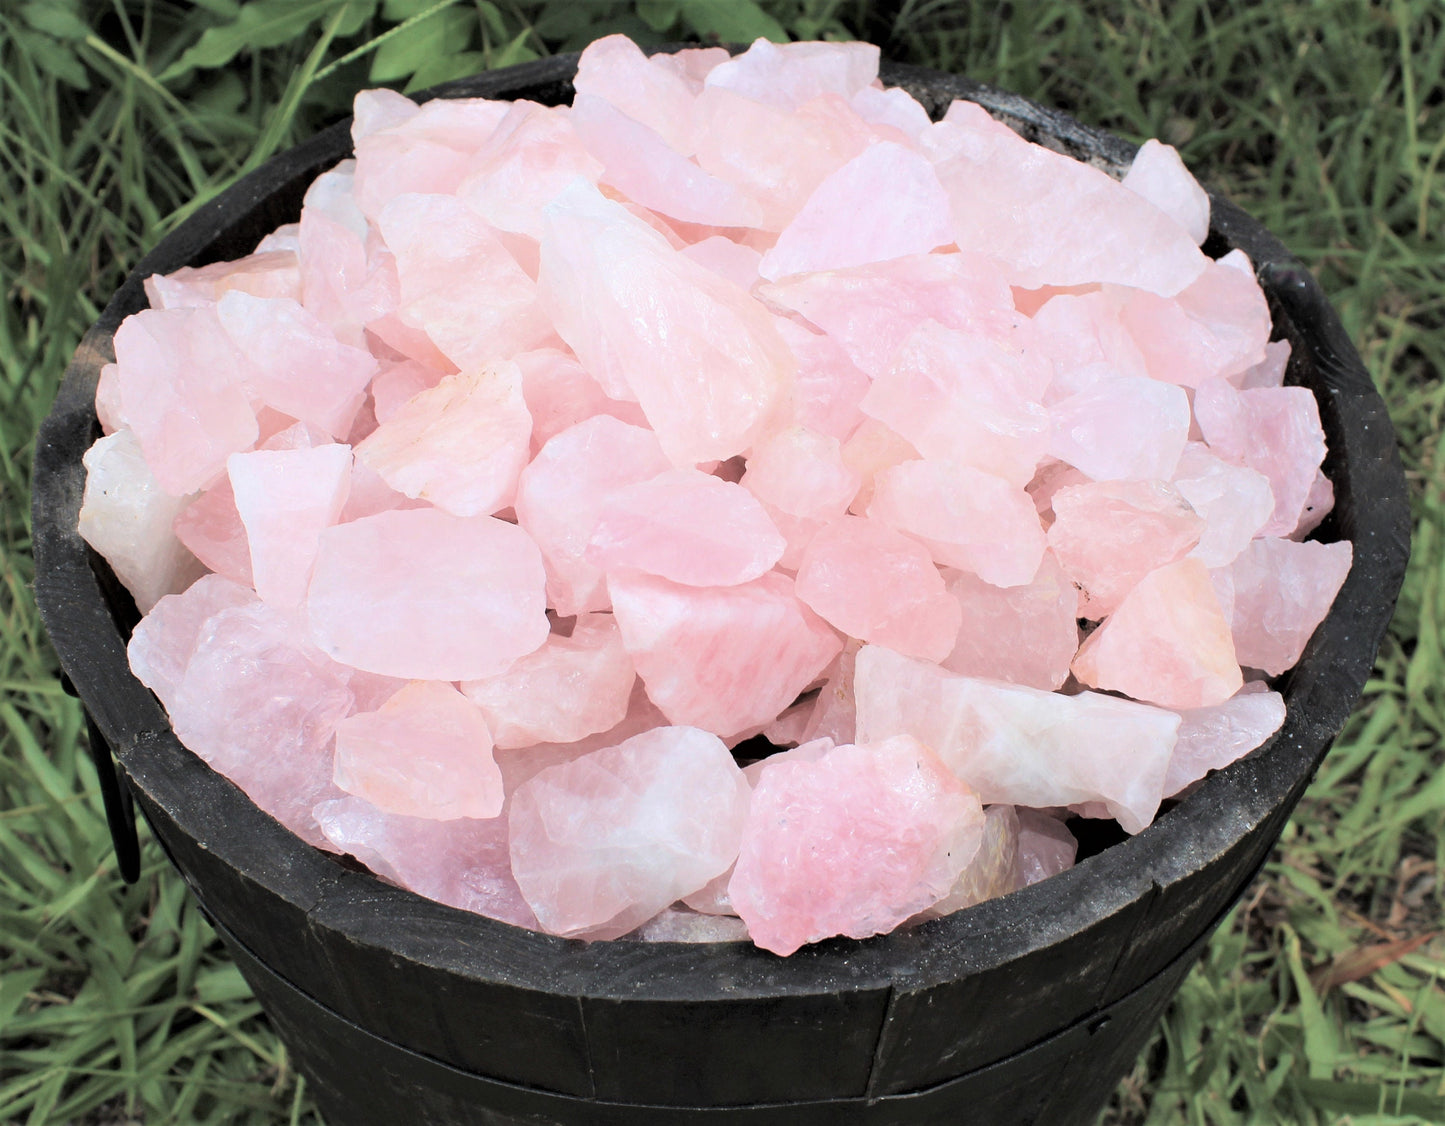 Rough Natural Rose Quartz Crystals